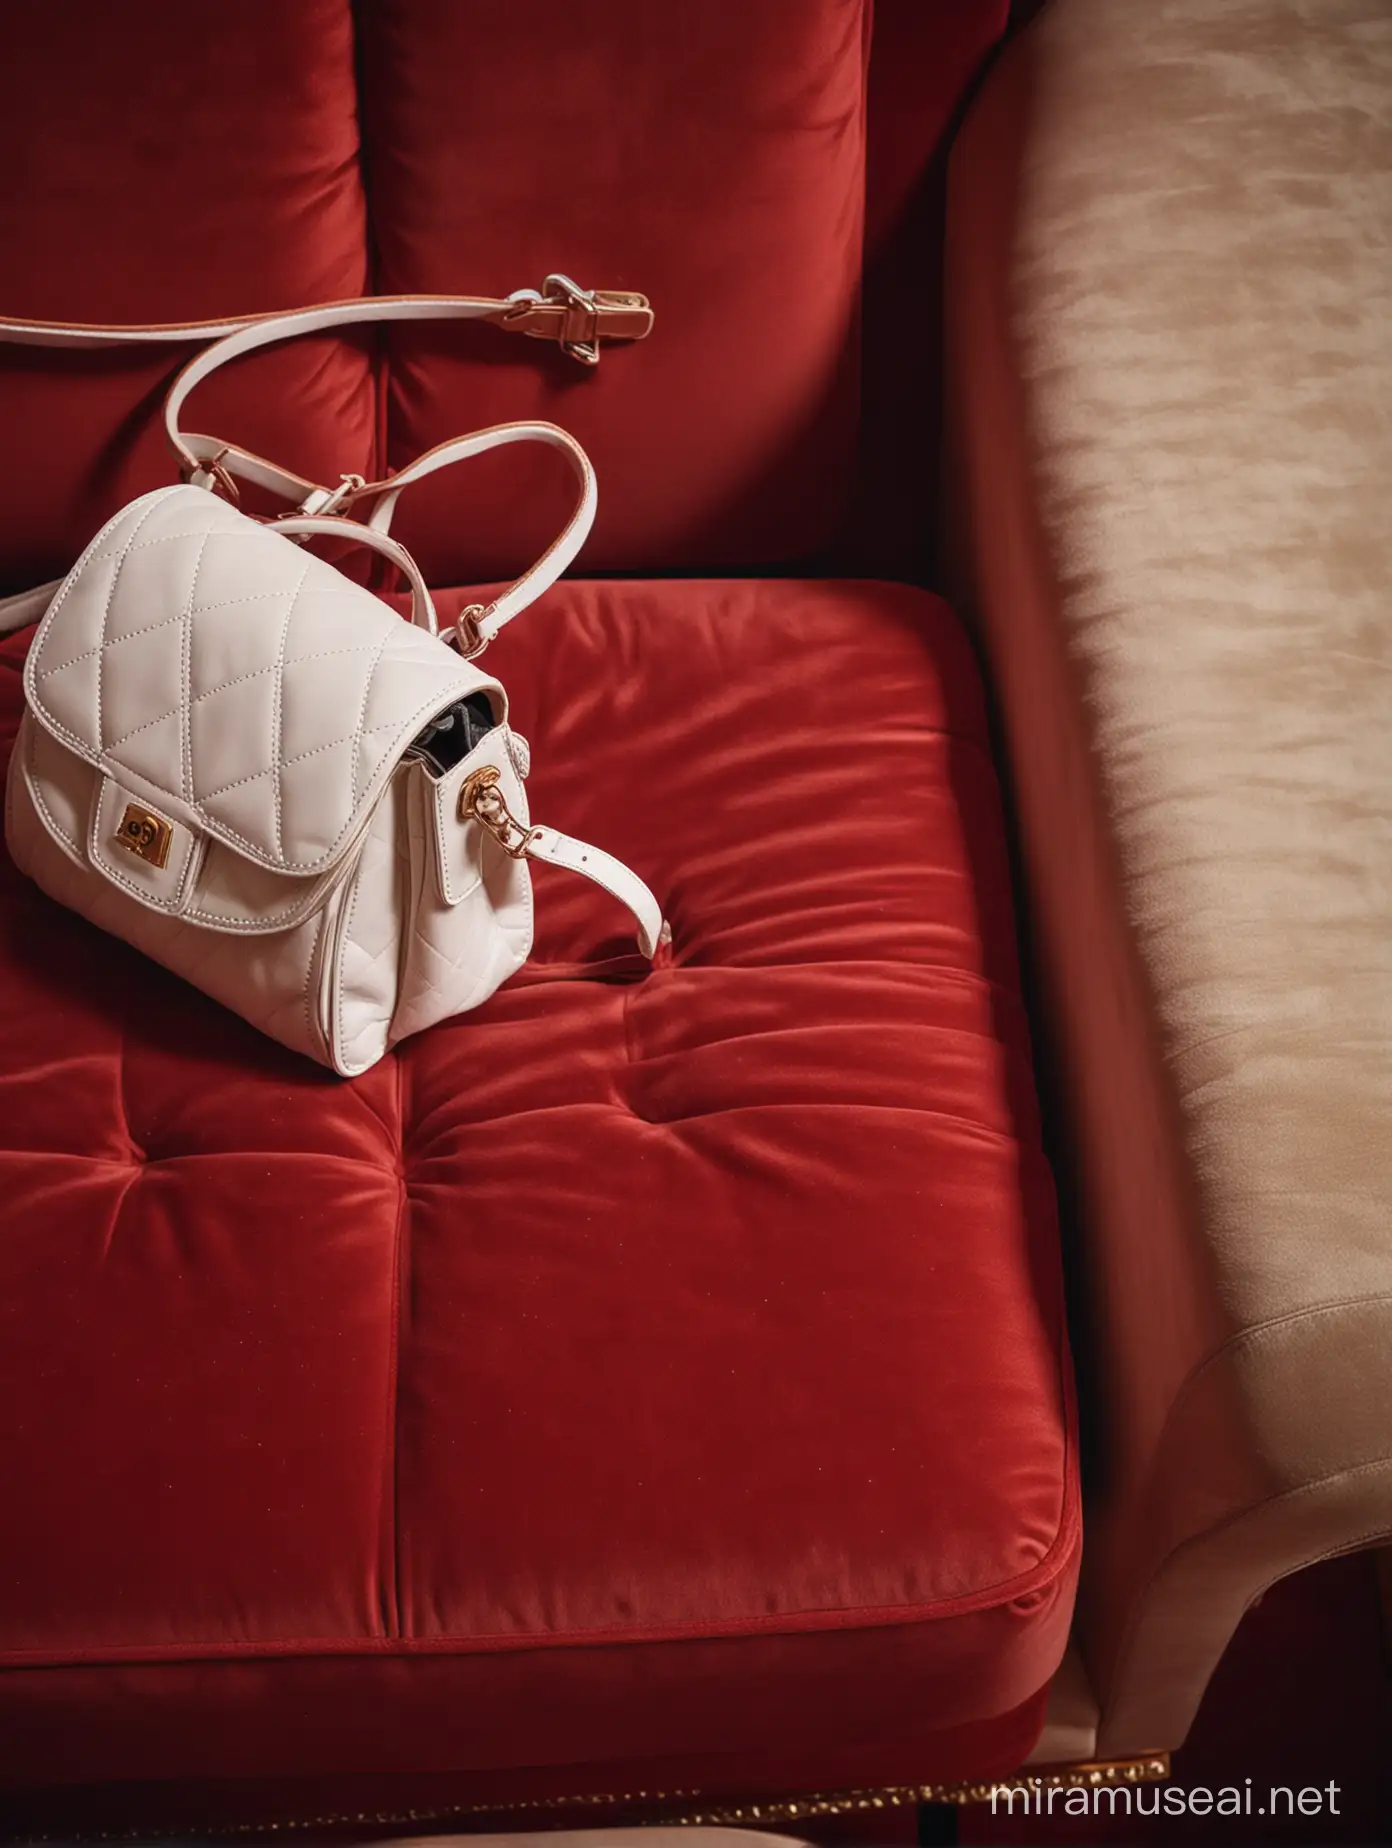 каталожное фото одной молодежной белой кожаной сумки маленькой на красном бархатном стуле в кинотеатре, вид сверху, натуральный свет, 35mm photo. Shot on film. In the style of UV photography
